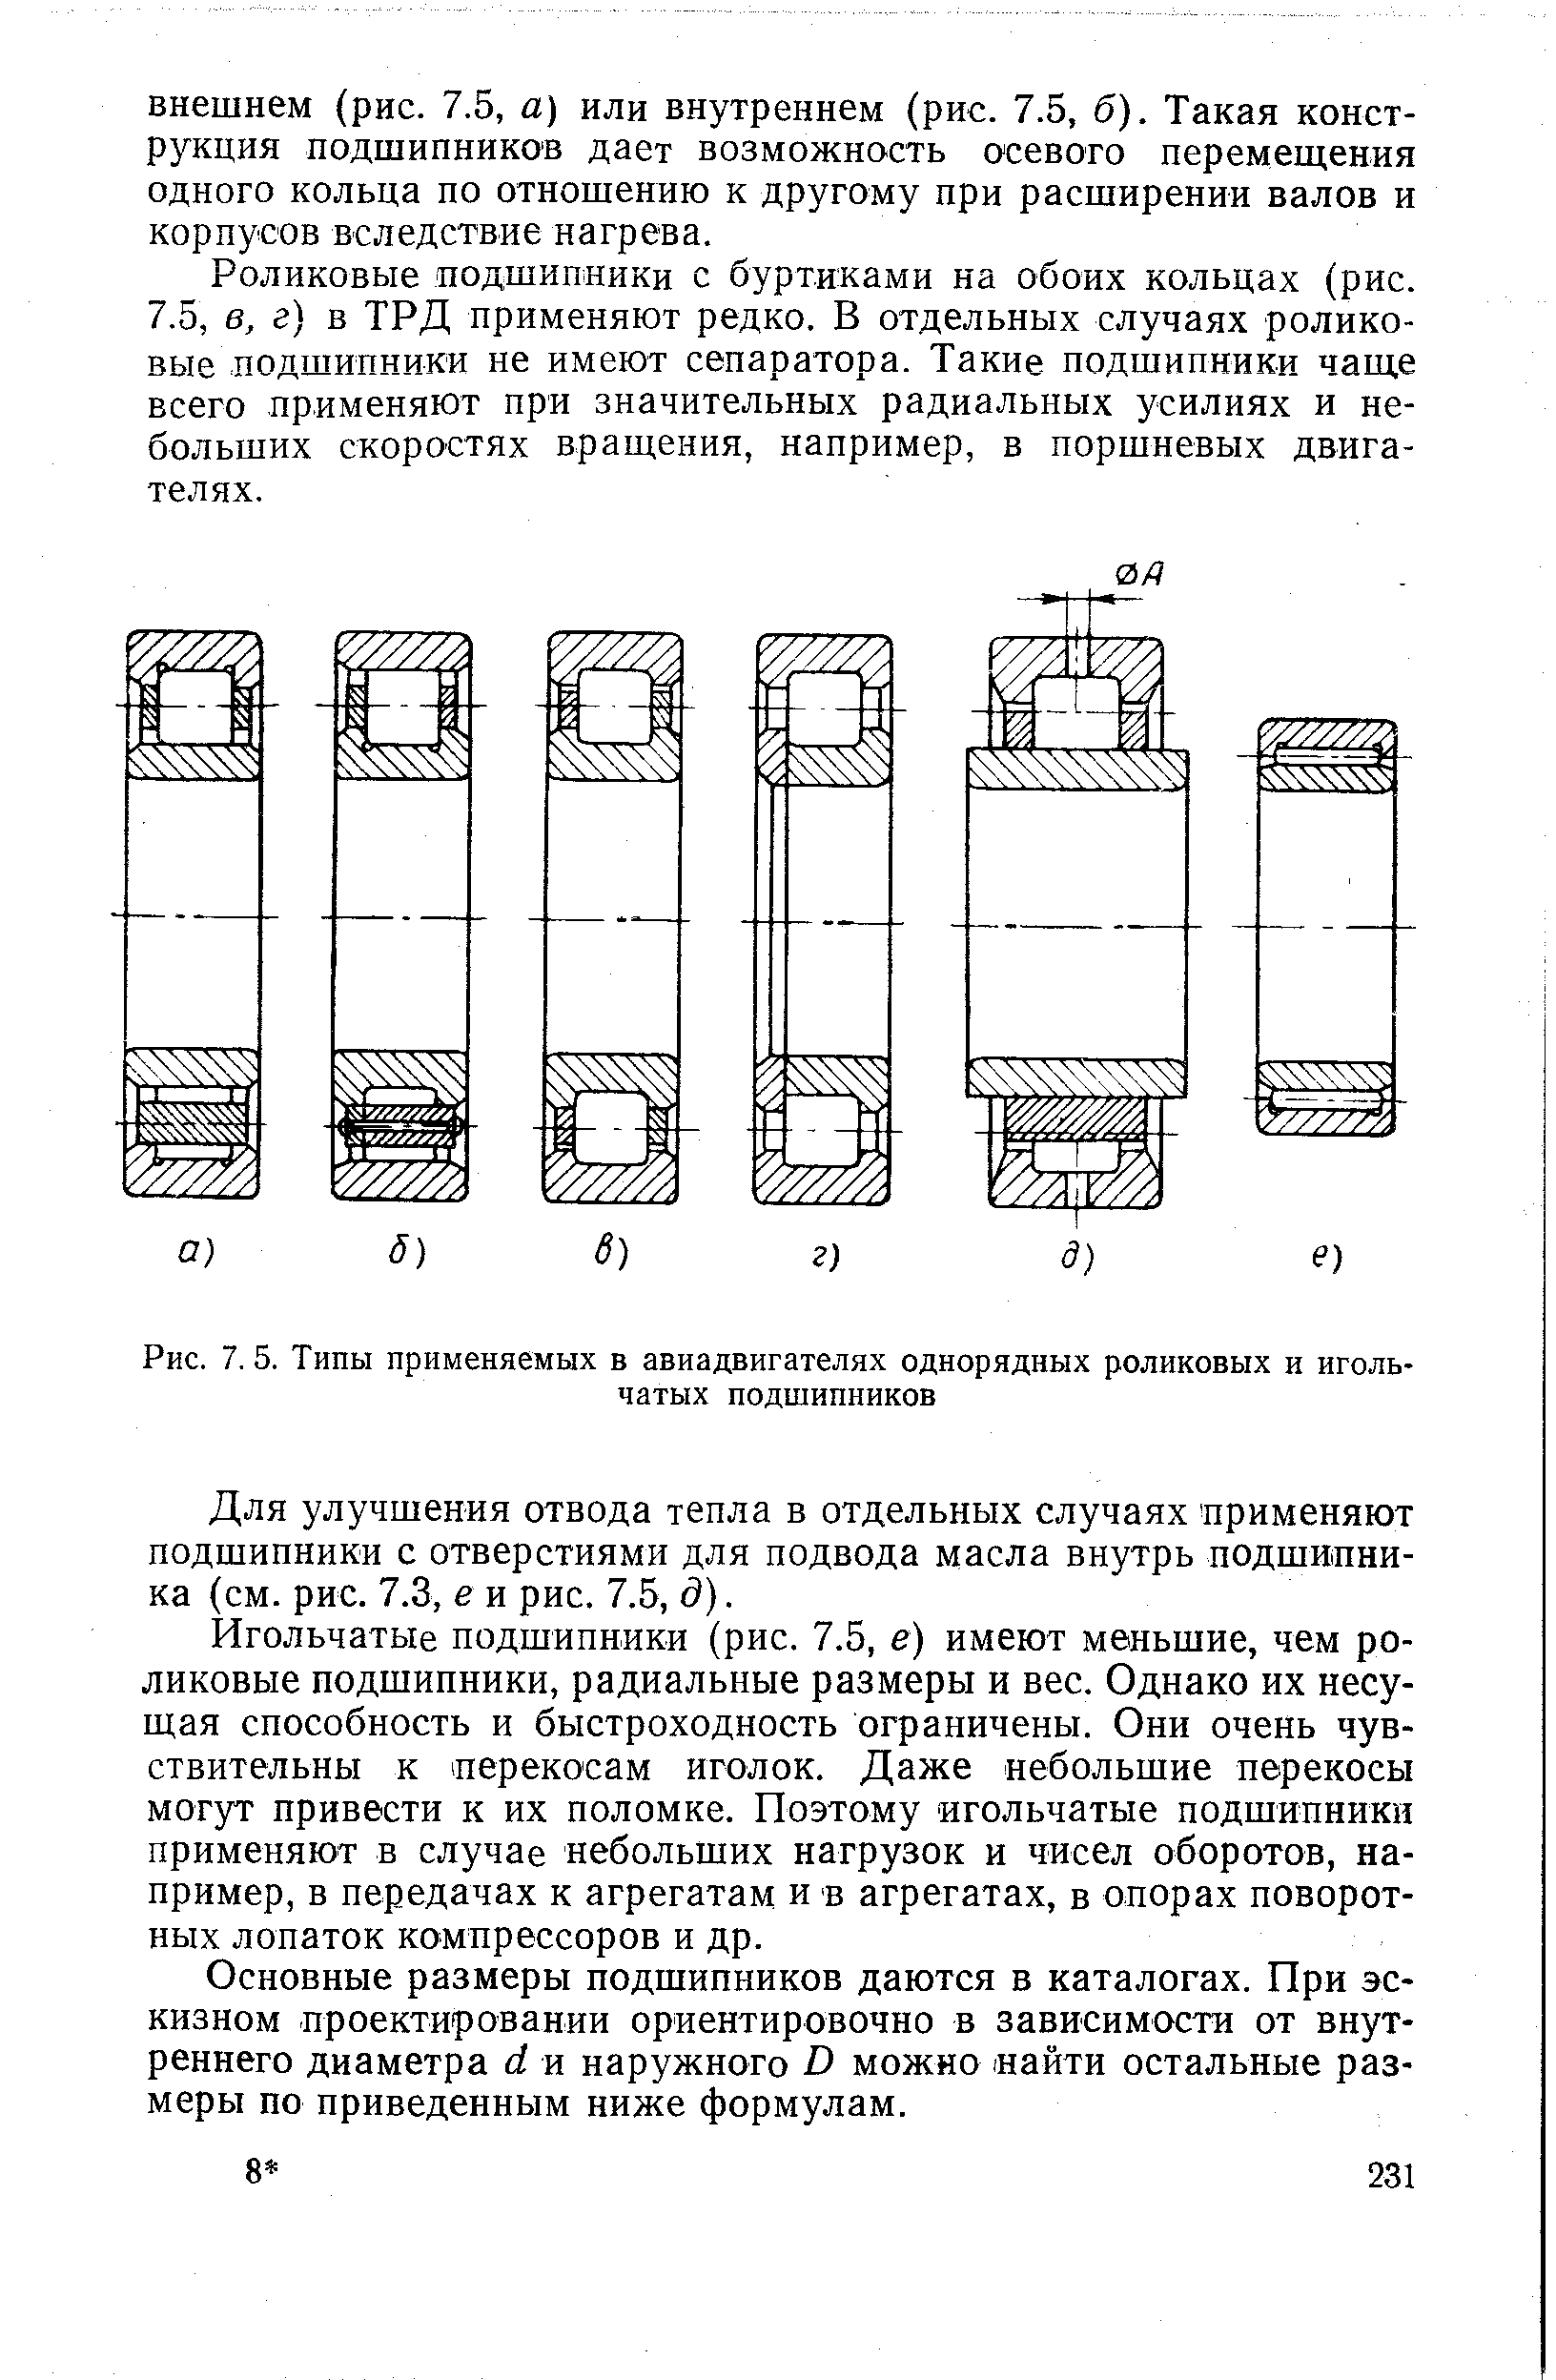 Рис. 7.5. Типы применяемых в авиадвигателях однорядных роликовых и игольчатых подшипников
